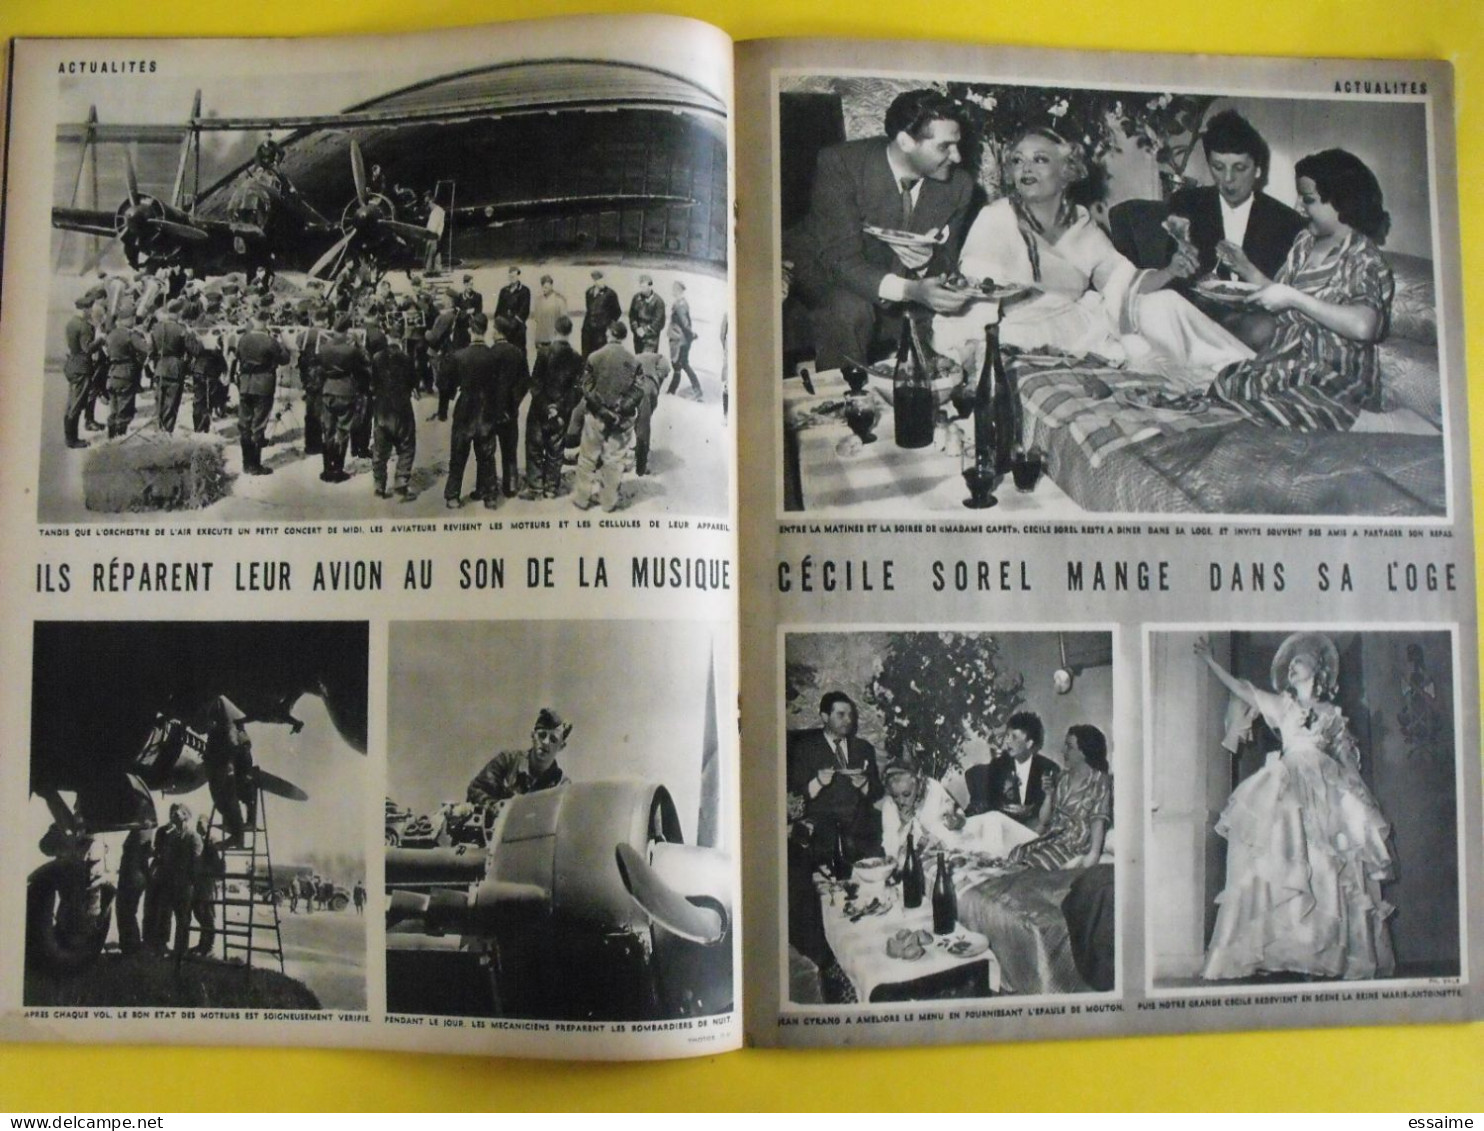 6 revues La semaine de 1941. actualités guerre. photos collaboration maurice chevalier viviane romance roosevelt